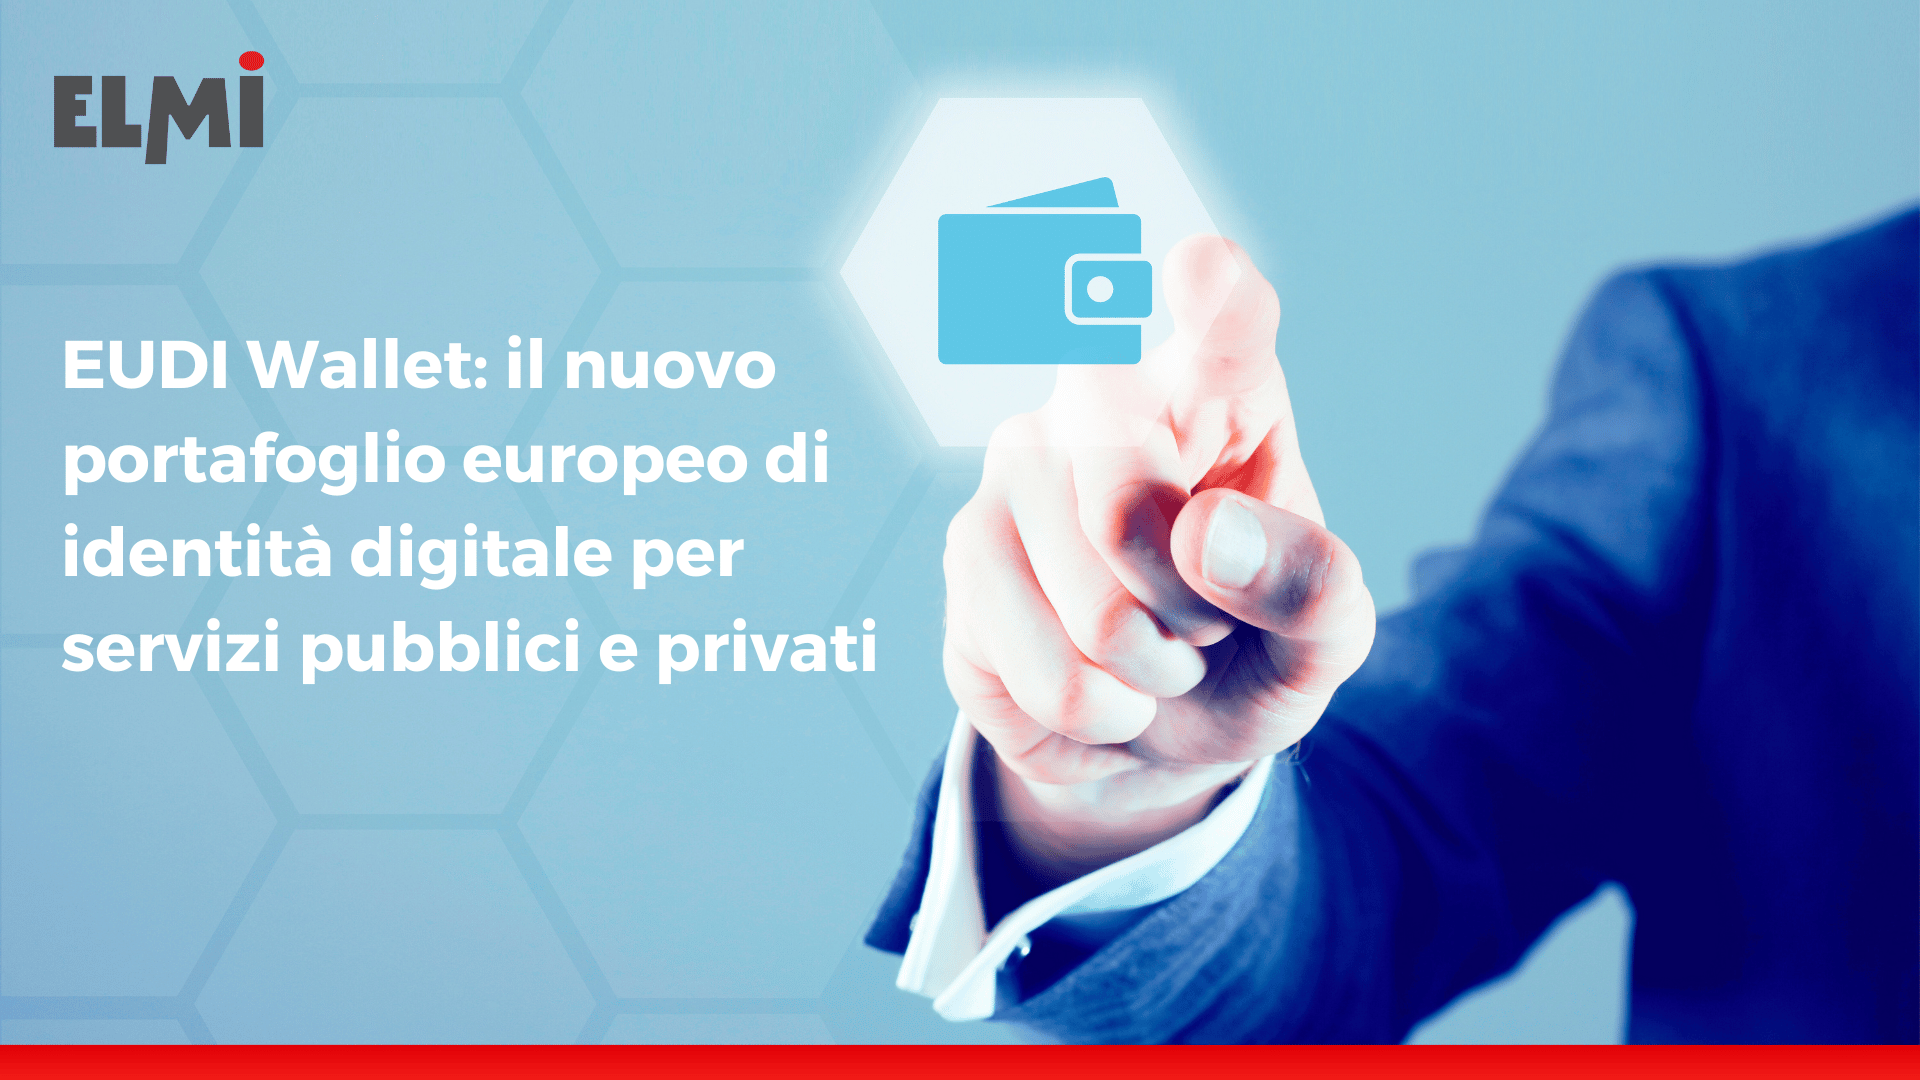 EUDI Wallet: il nuovo portafoglio europeo di identità digitale per servizi pubblici e privati